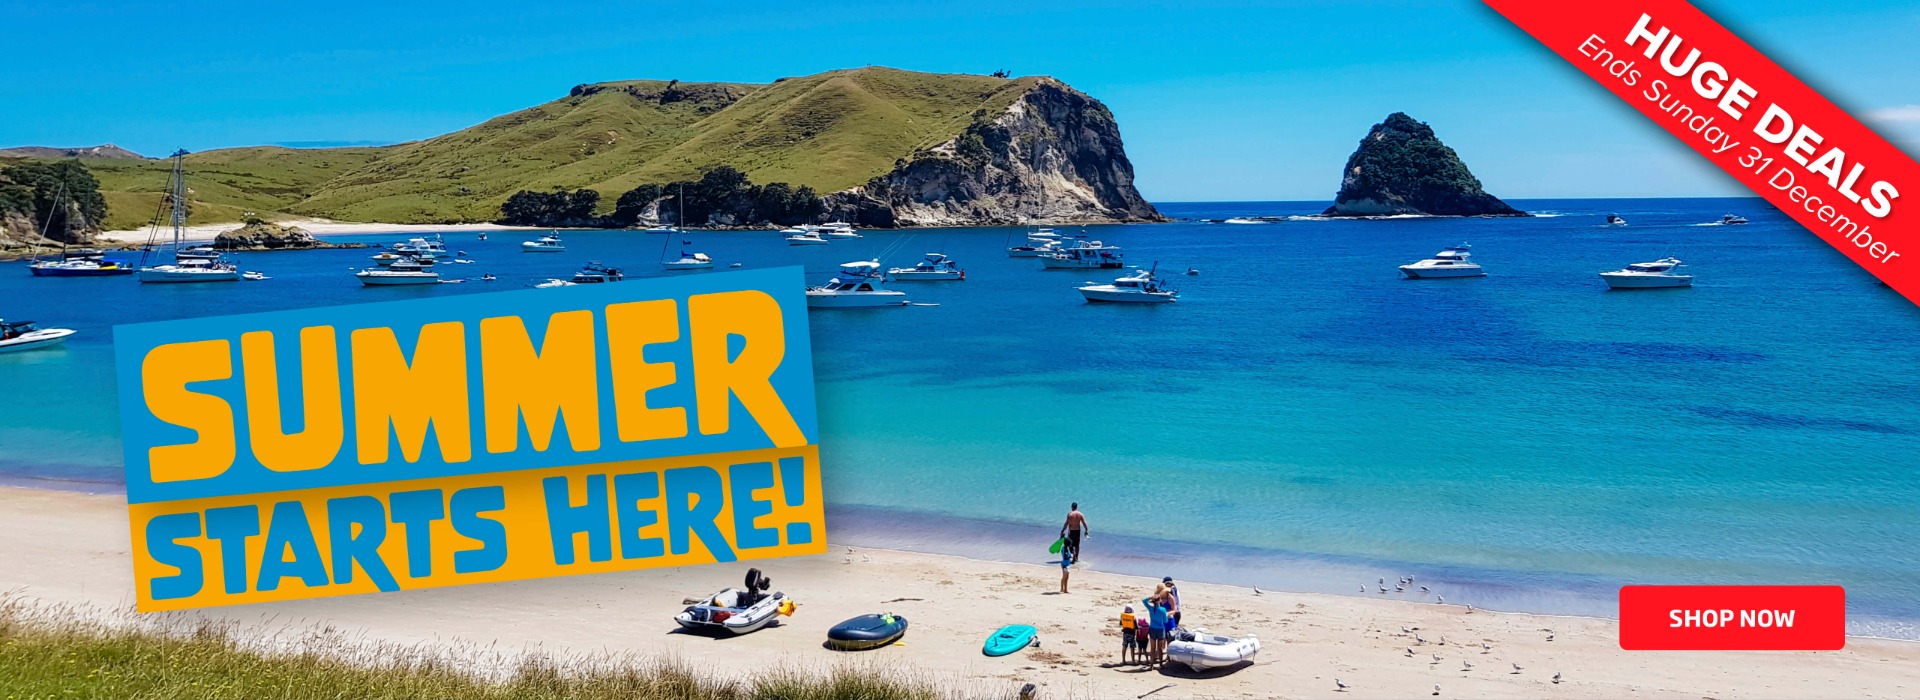 Summer Starts Here | Burnsco | NZ